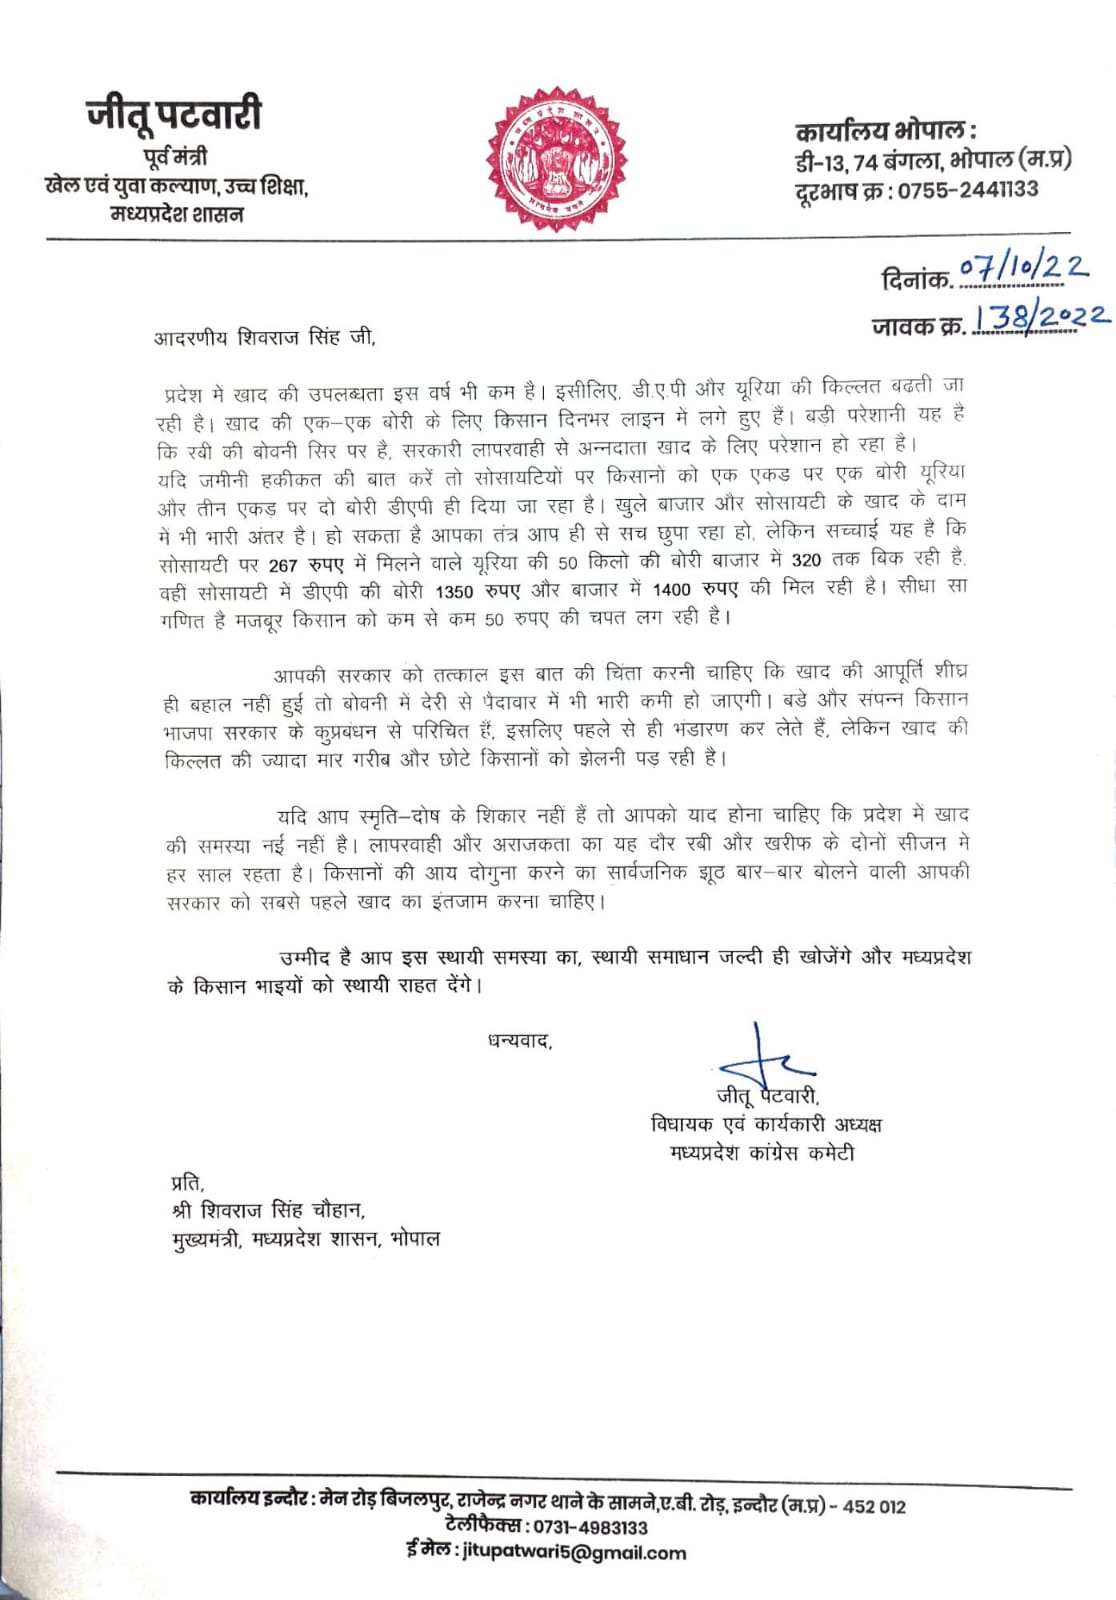 jitu Patwari wrote a letter to cm Shivraj